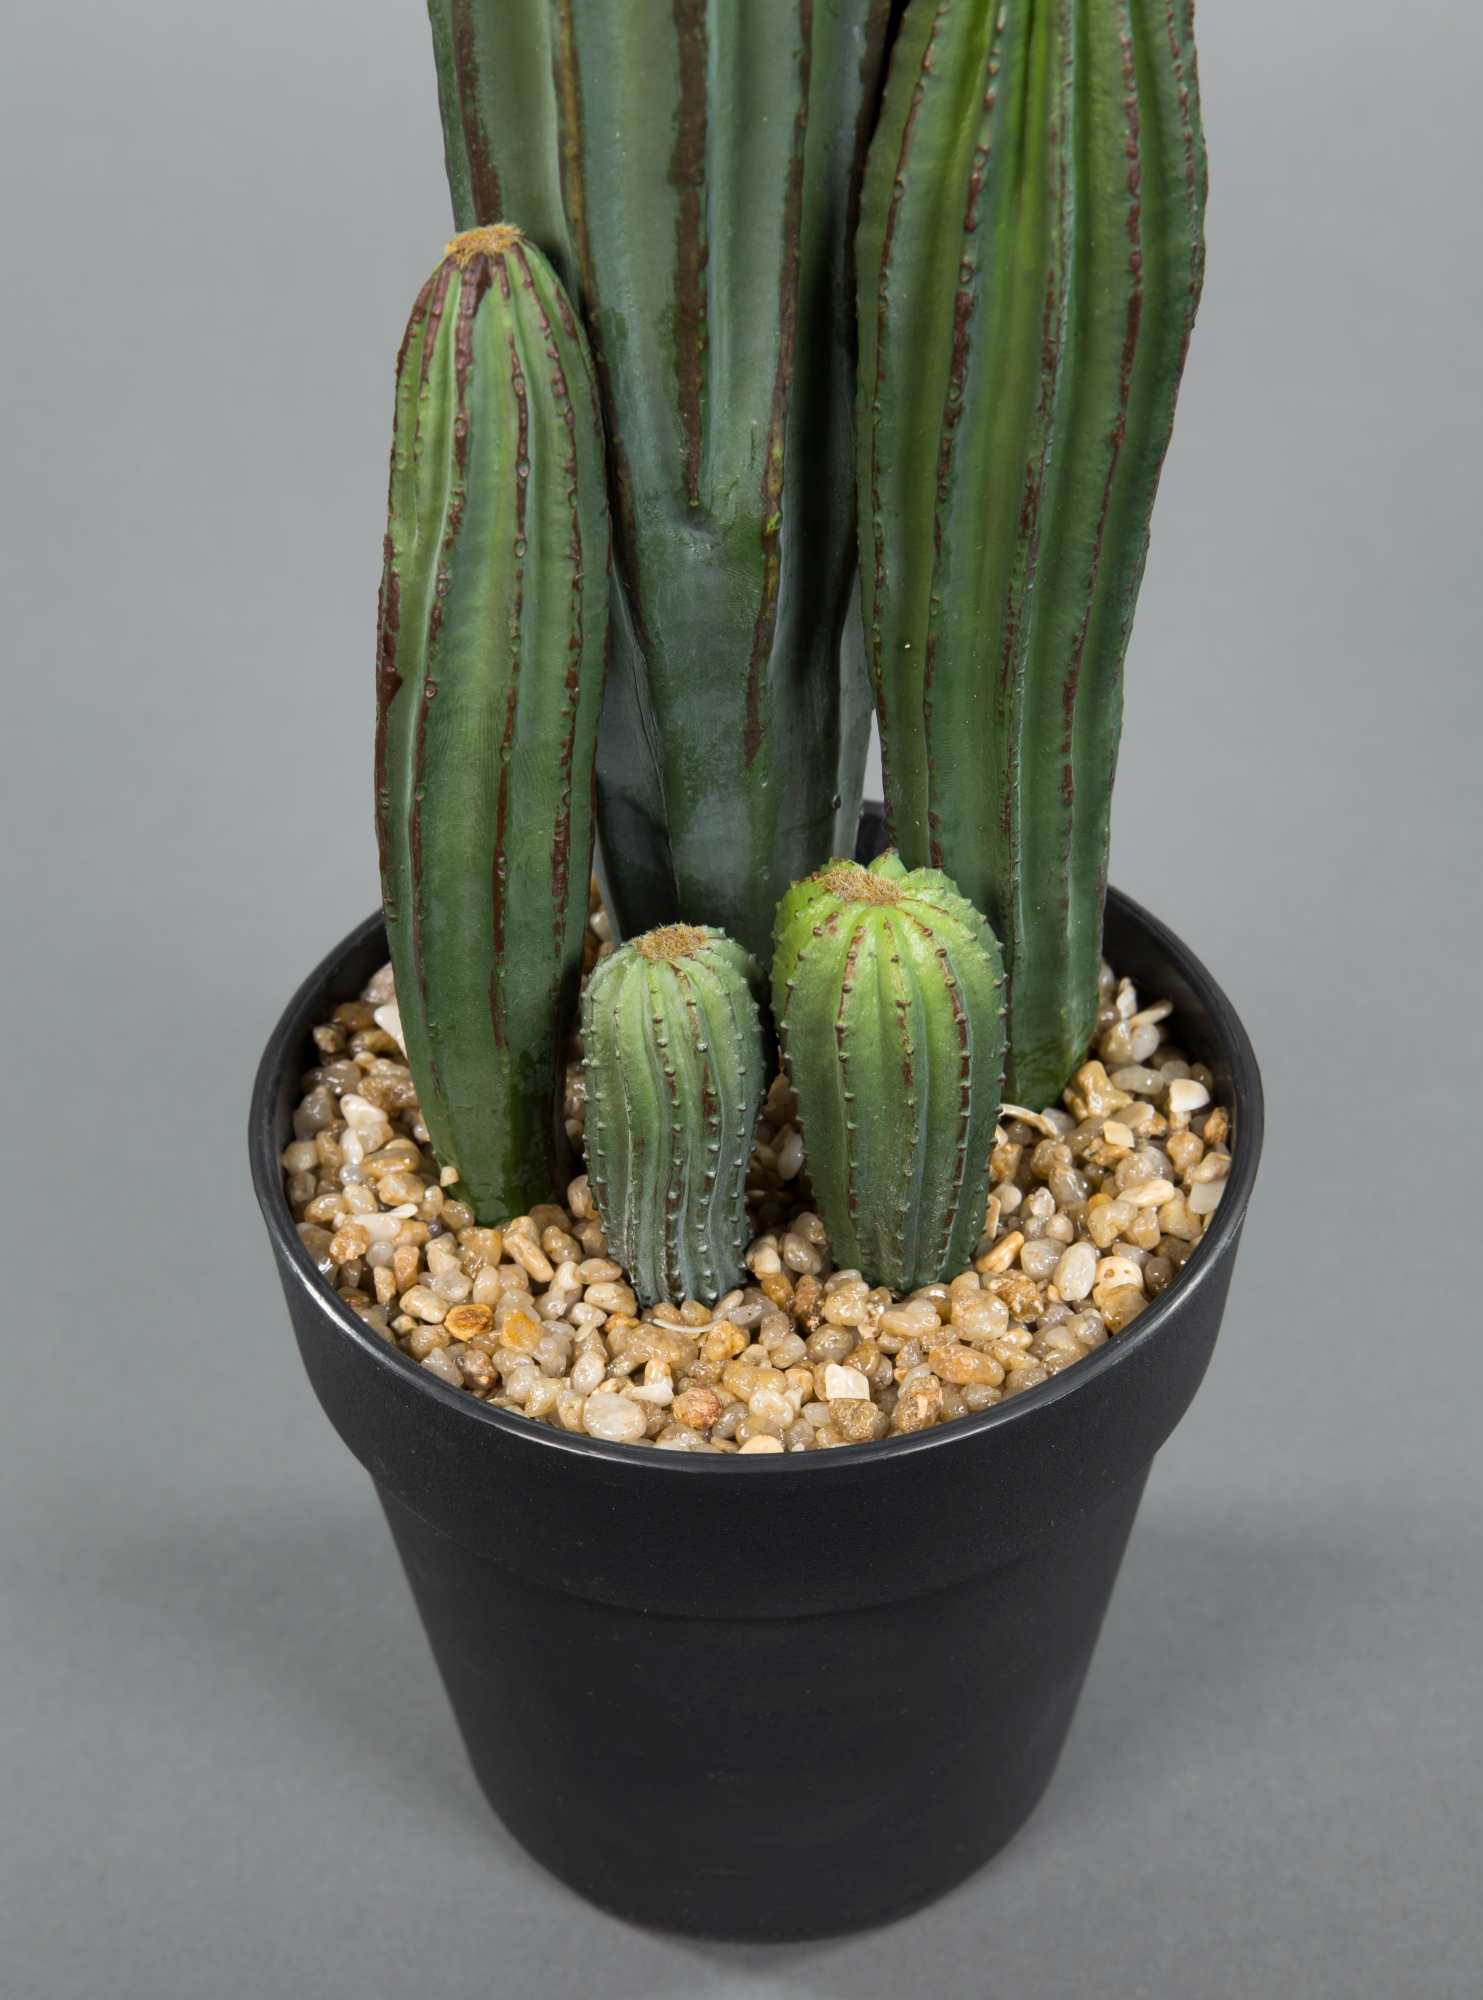 JA Kaktus künstlicher Topf Pflanzen Kunstpflanzen künstliche 36cm im Säulenkaktus Kakteen